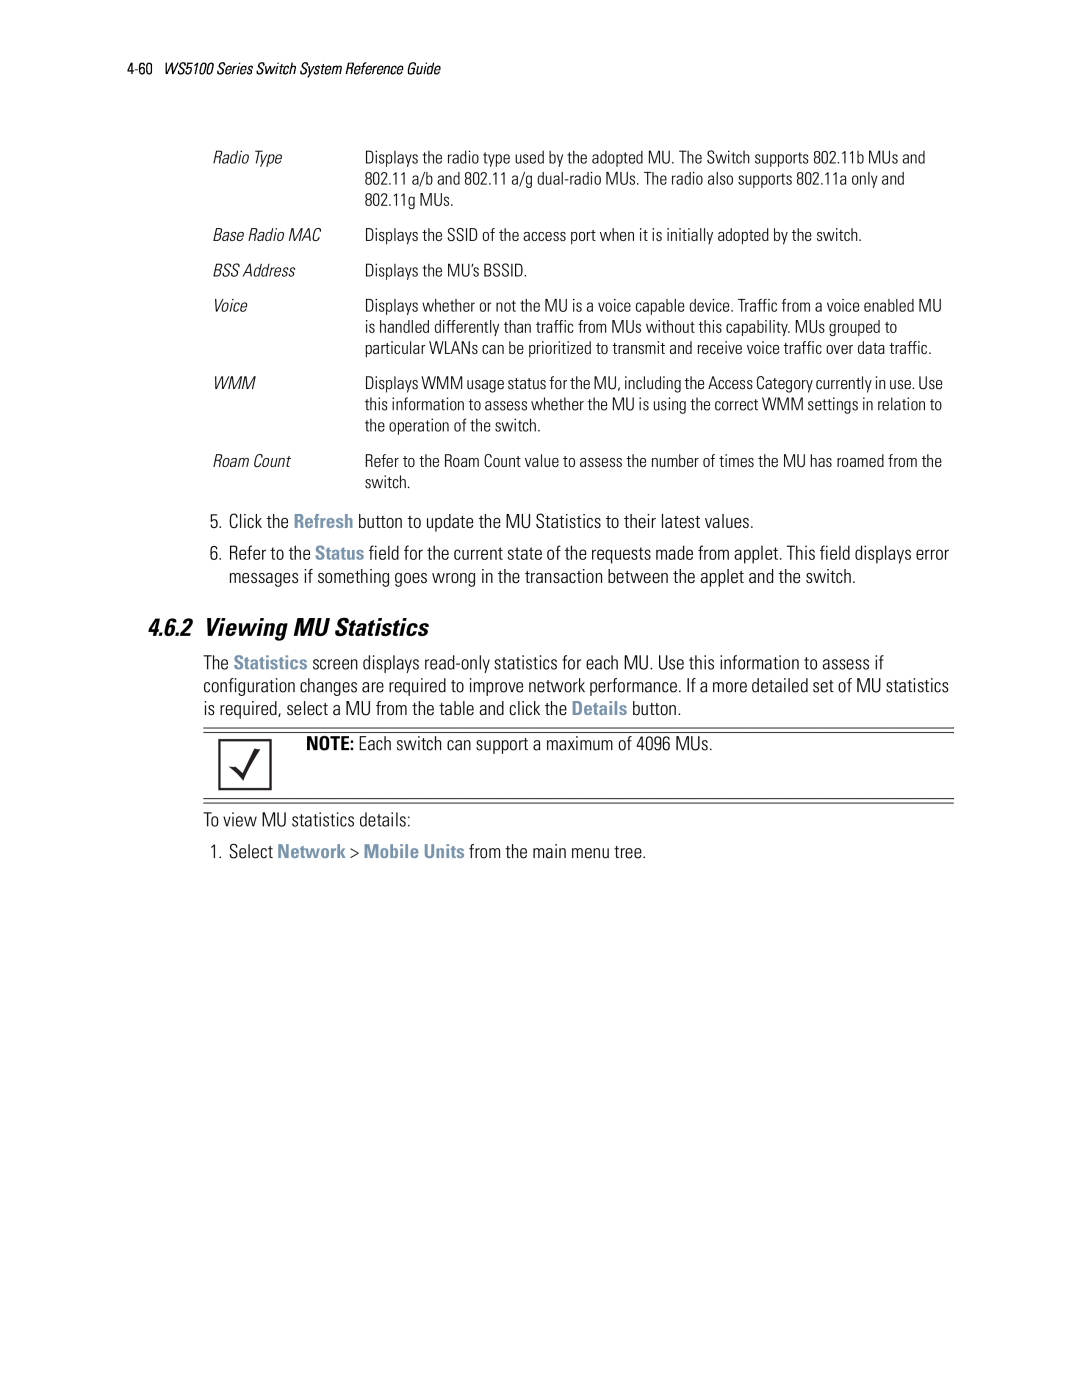 Motorola WS5100 manual 4.6.2Viewing MU Statistics 